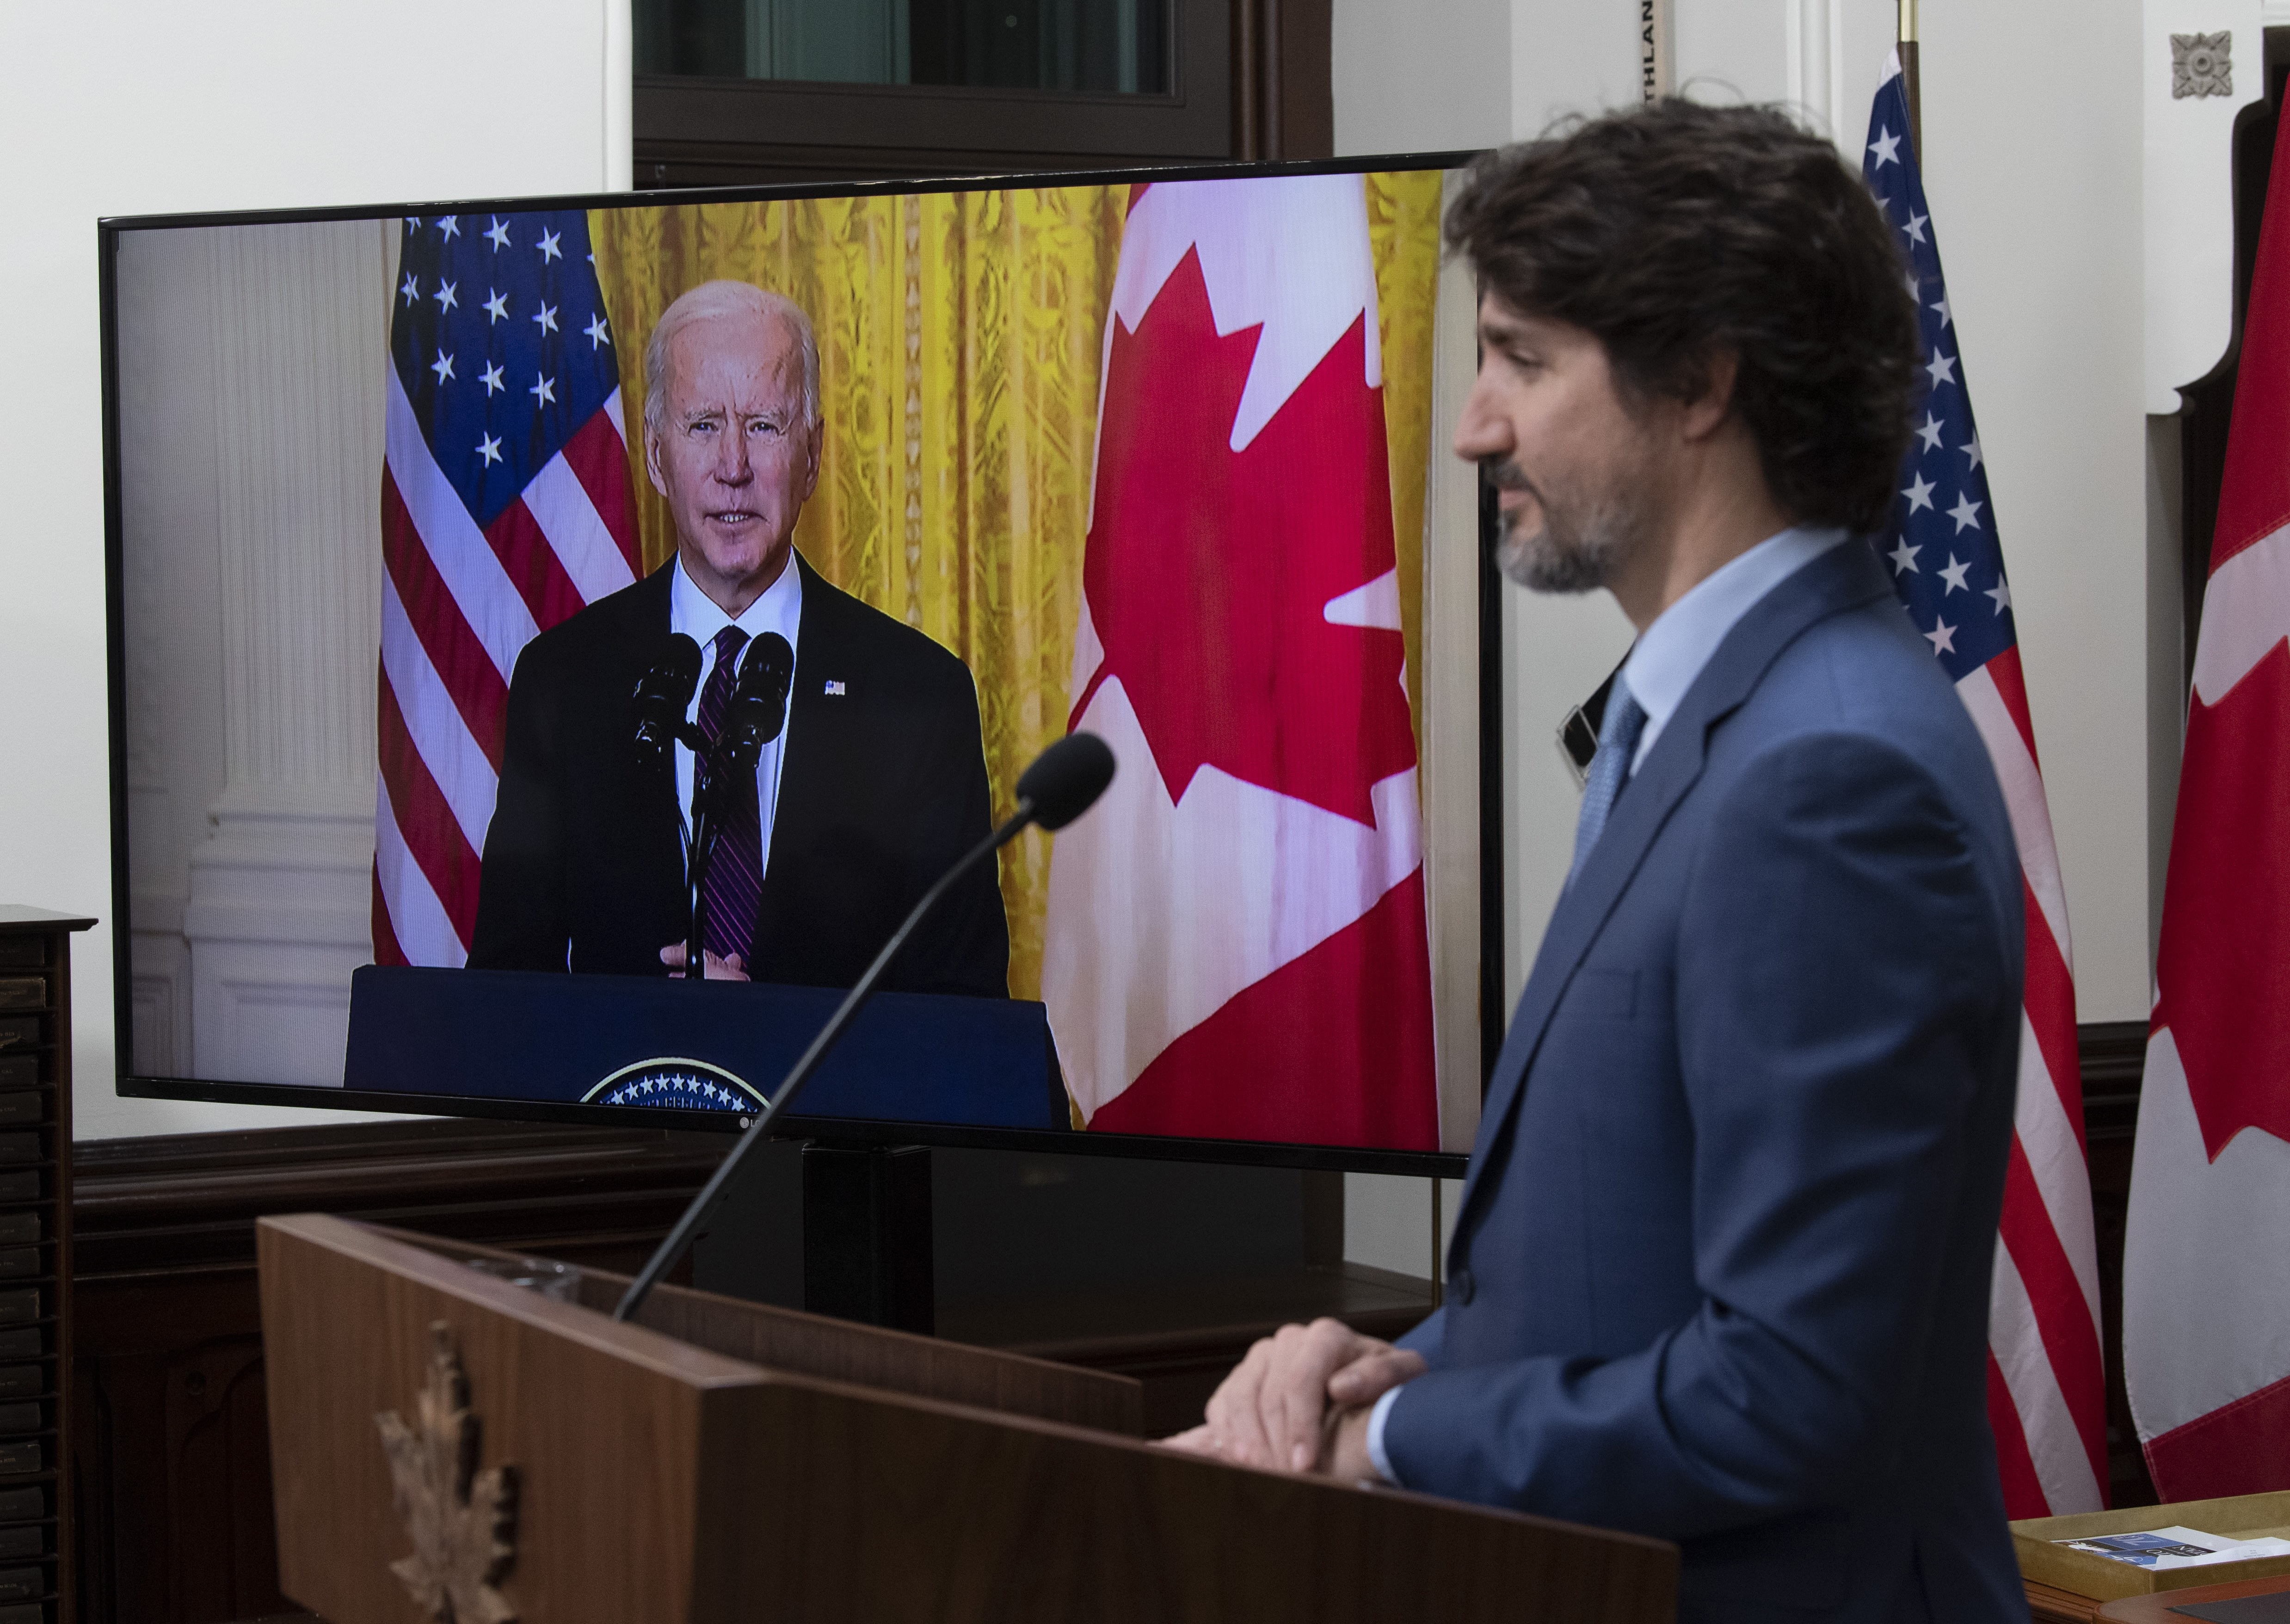 Foto de archivo: El presidente de Canadá, Justin Trudeau, y el presidente de Estados Unidos, Joe Biden, en un diálogo por videoconferencia el 24 de febrero de 2021 (ADRIAN WYLD / ZUMA PRESS / CONTACTOPHOTO)
